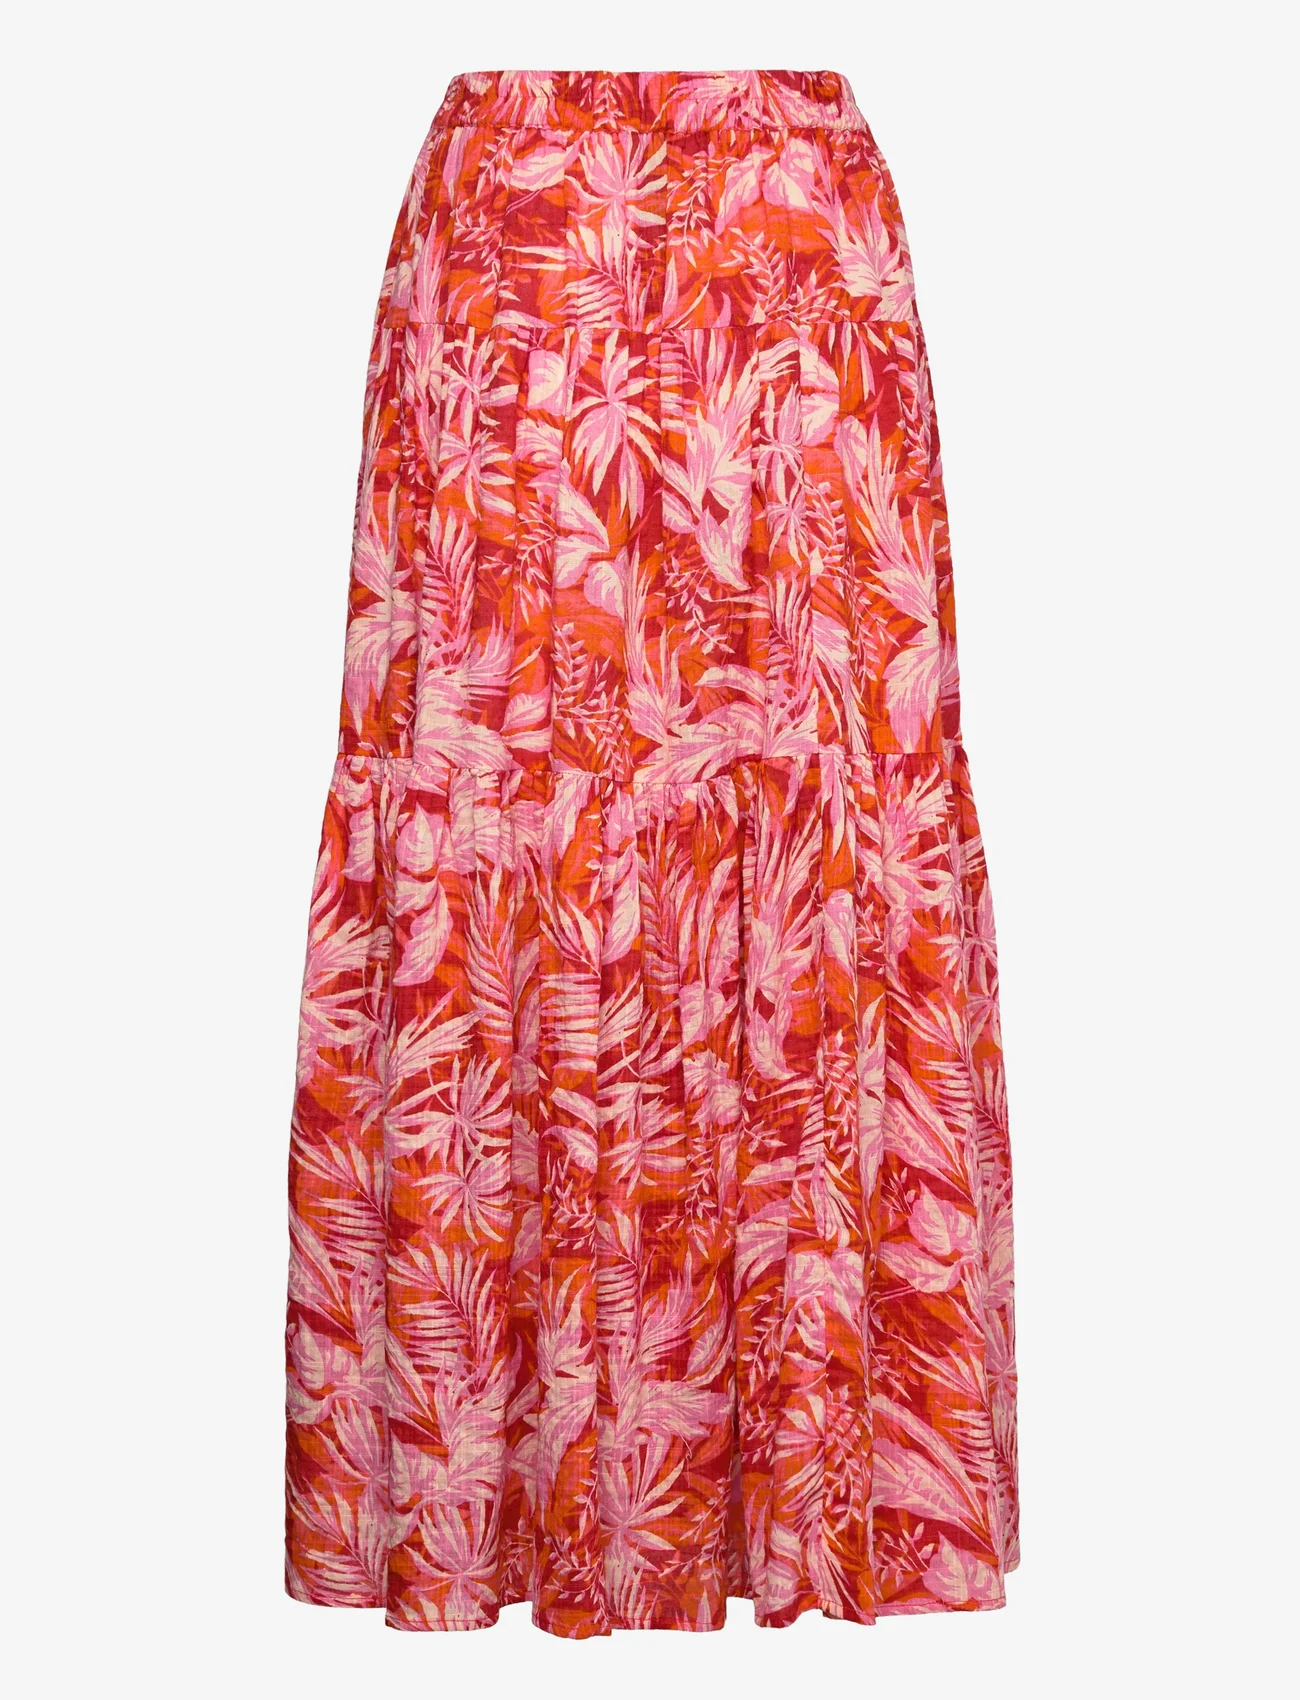 Lollys Laundry - Sunset Skirt - 30 red - 1